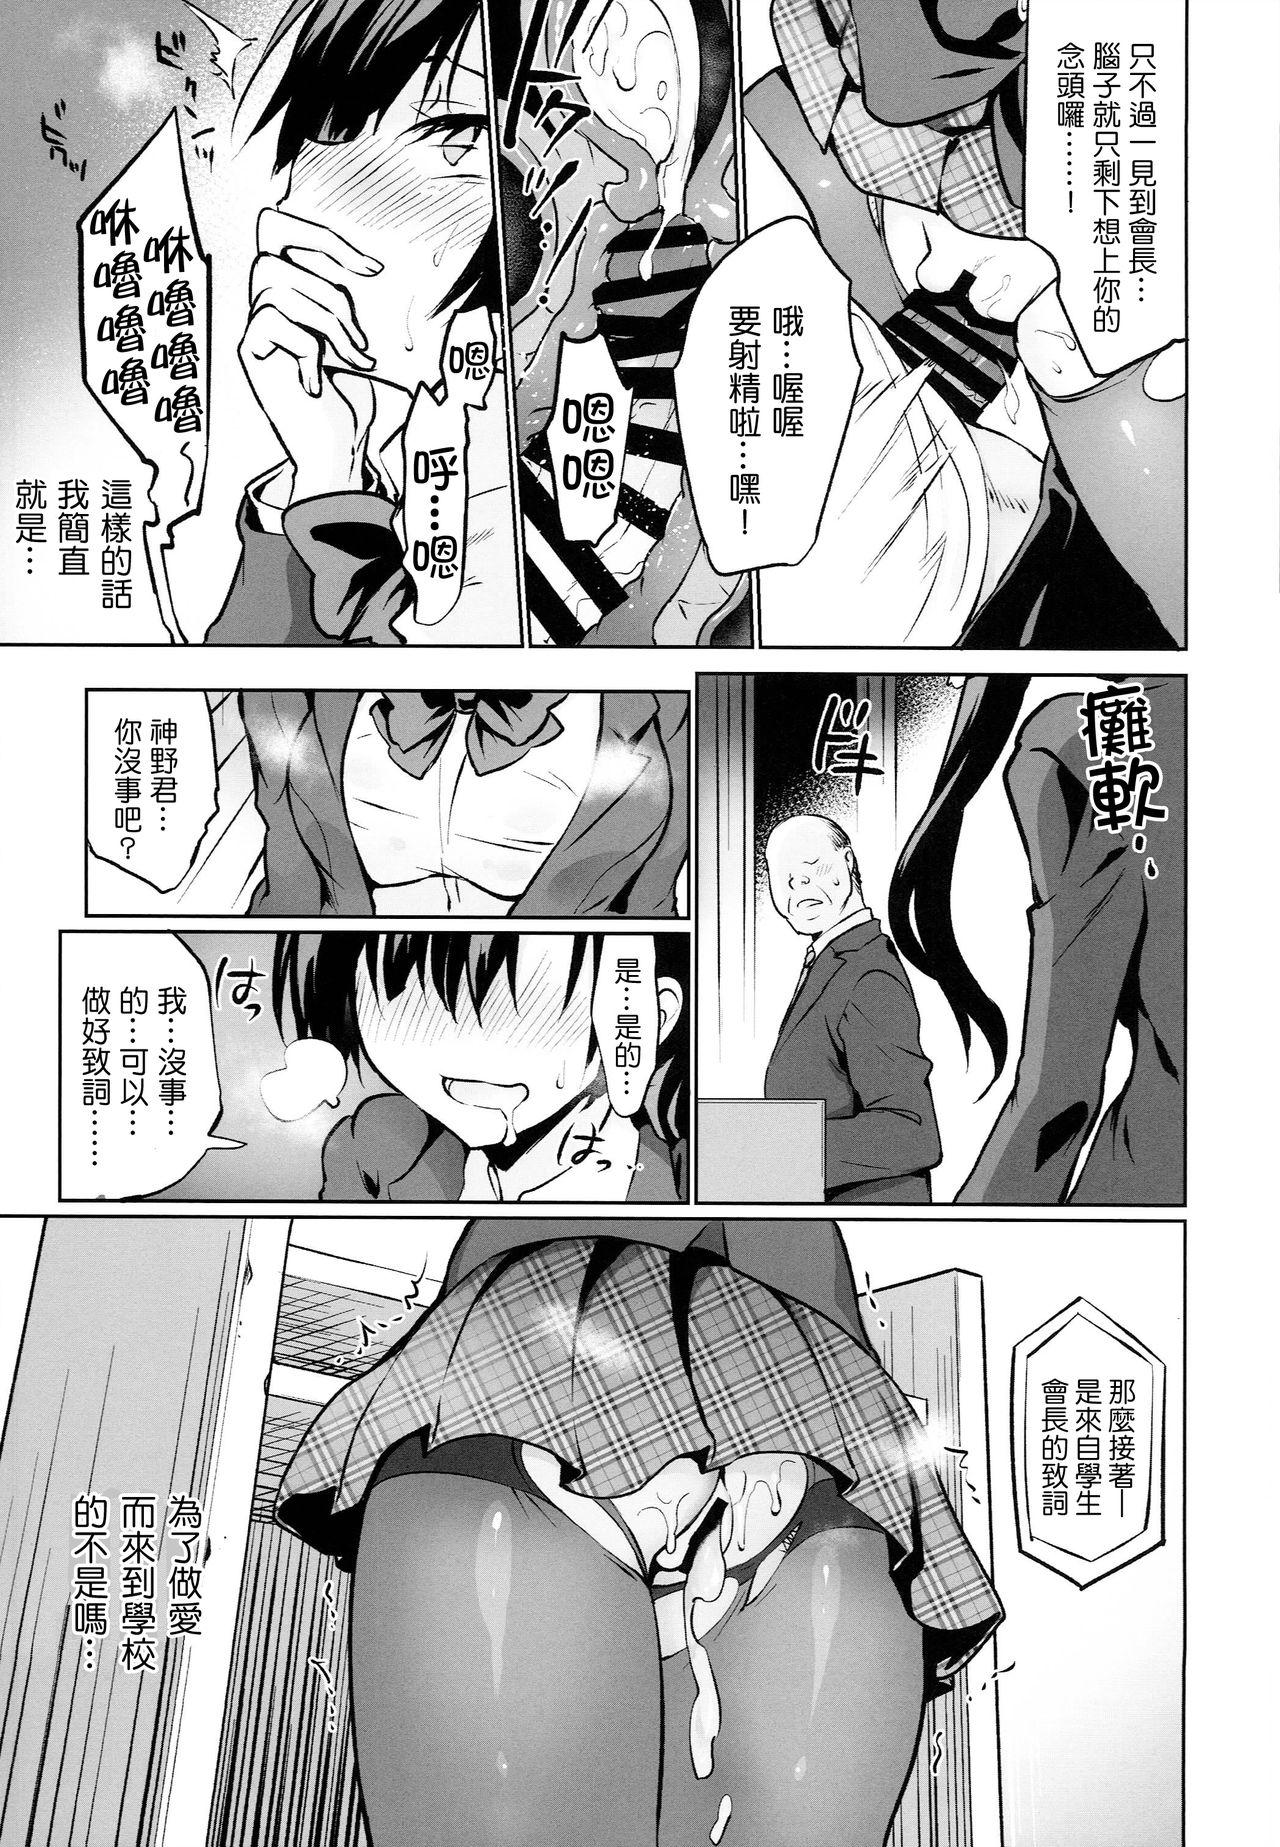 Petite Teen Gakkou de Seishun! 15 - Original Pica - Page 6